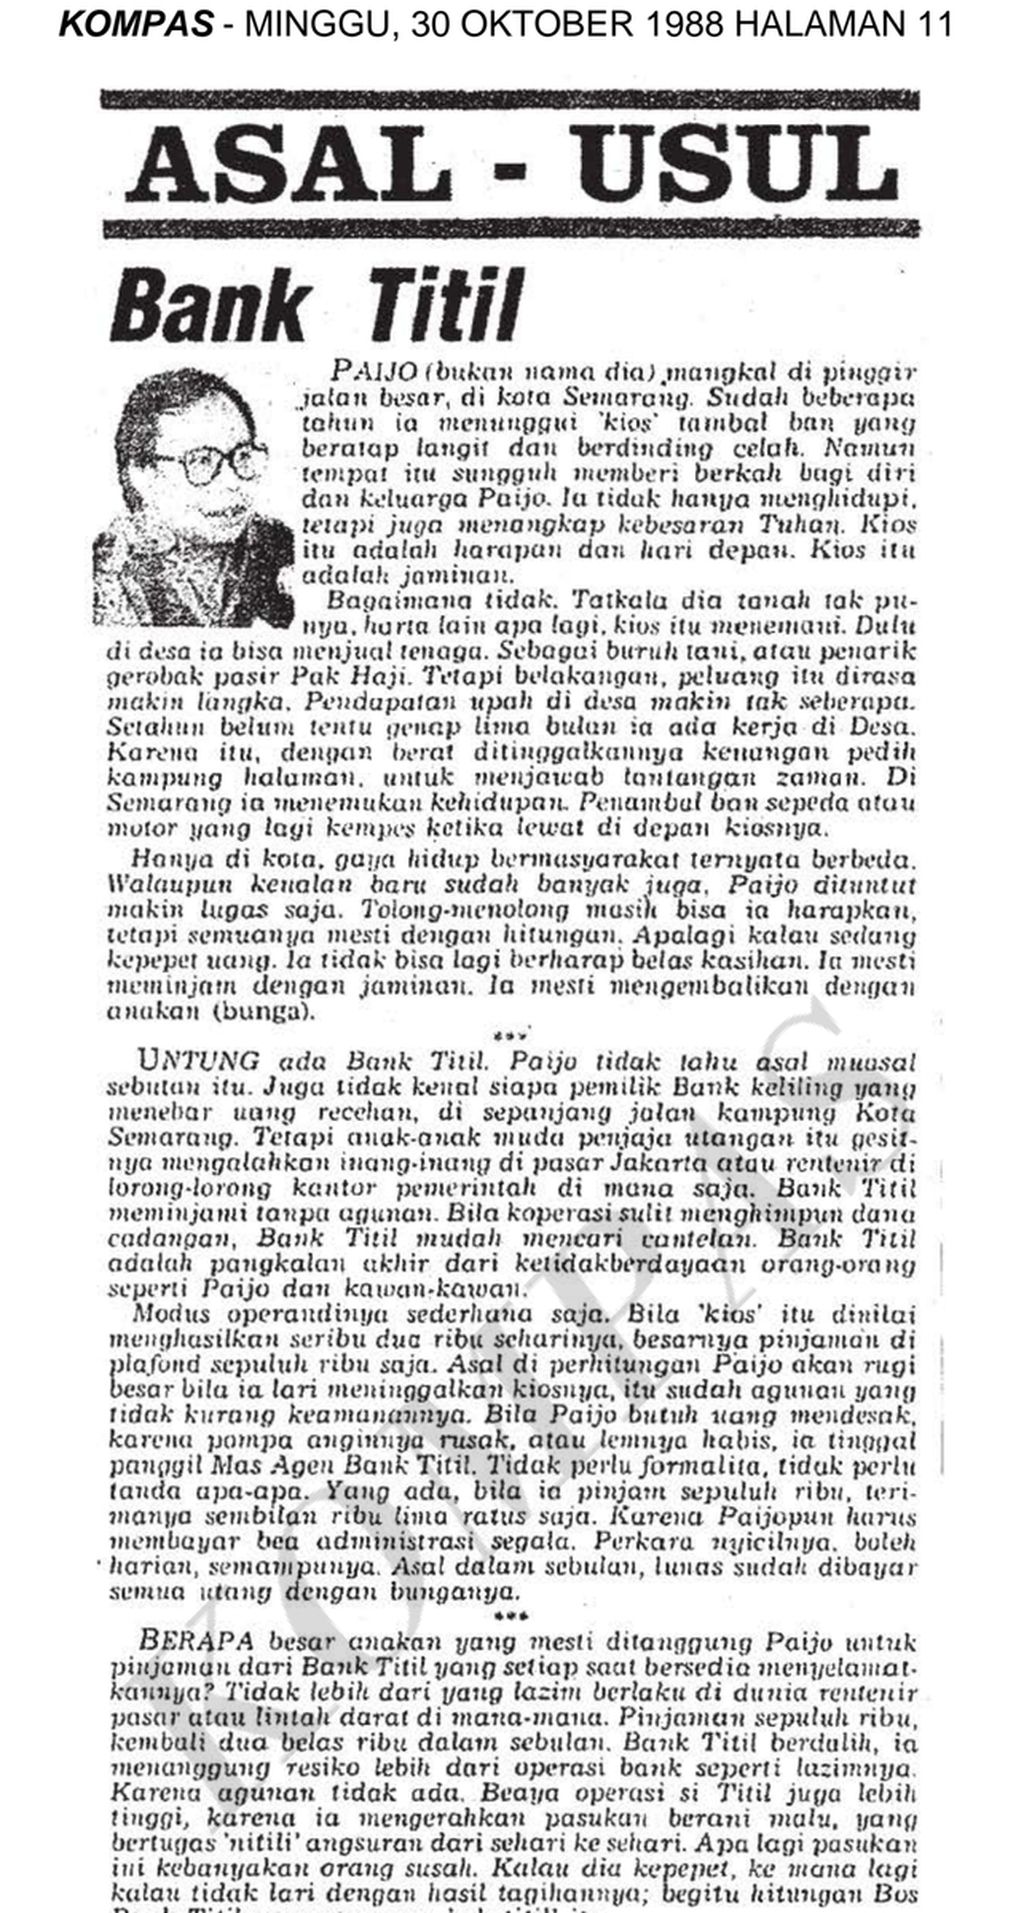 Berita tentang asal-usul bank <i>titil</i>. Terbit di harian Kompas, 30 Oktober 1988. 